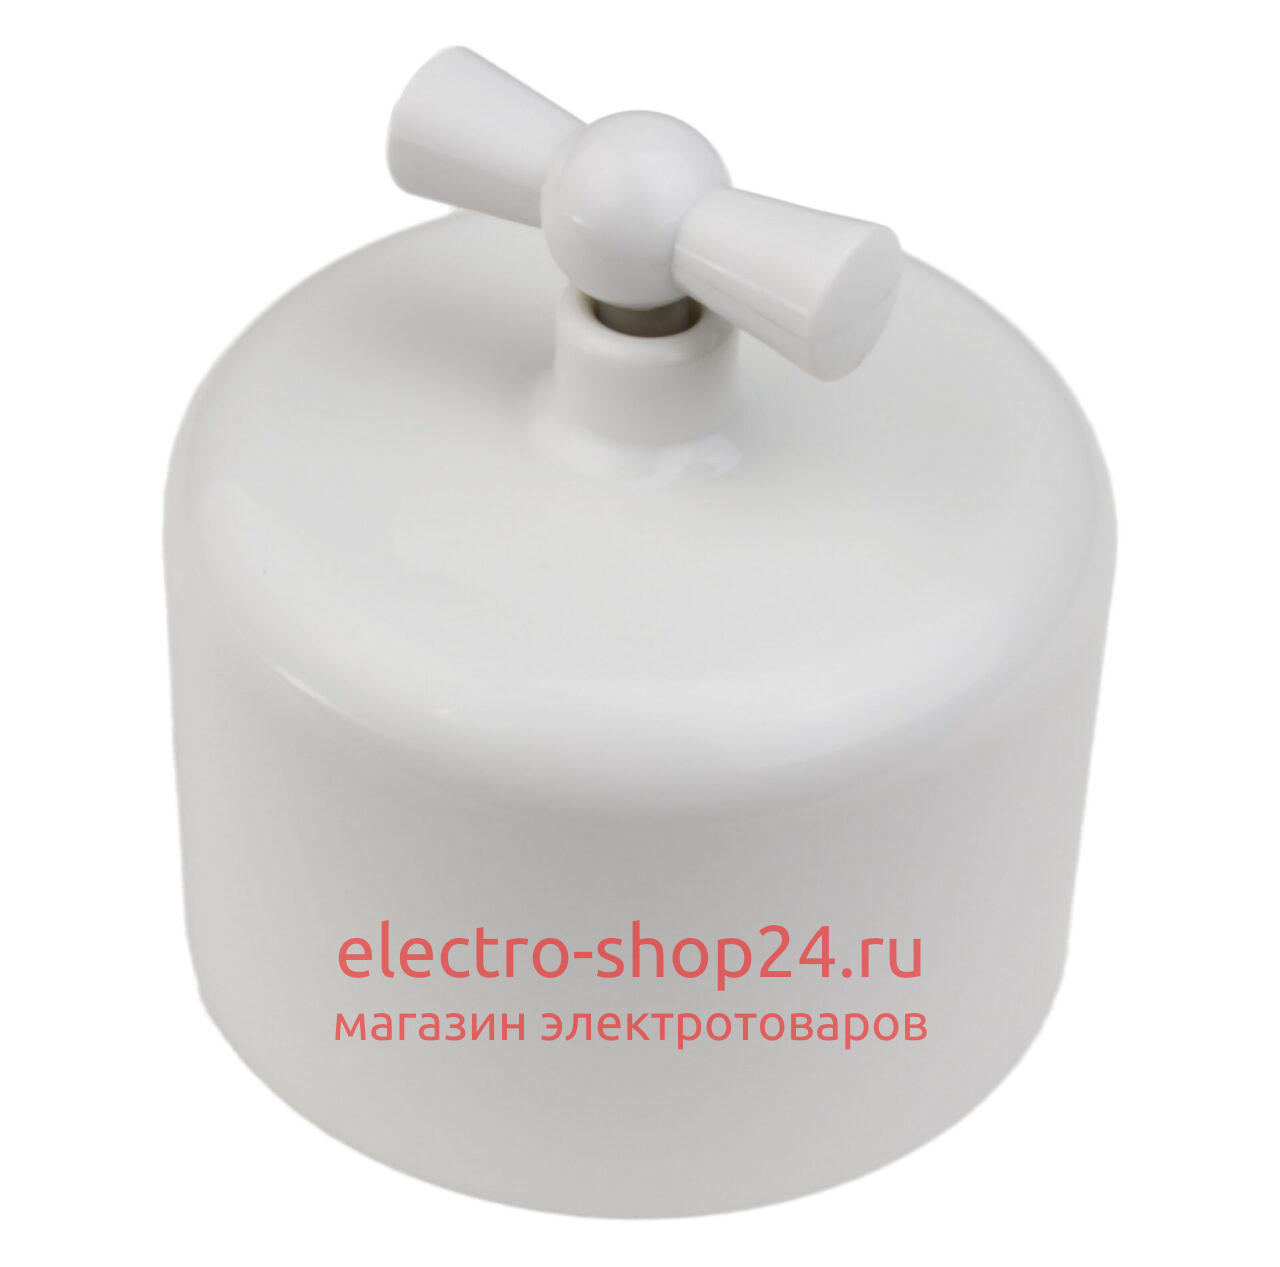 Выключатель 2-клавишный Bironi Ришелье пластик белый R1-212-21 R1-212-21 - магазин электротехники Electroshop